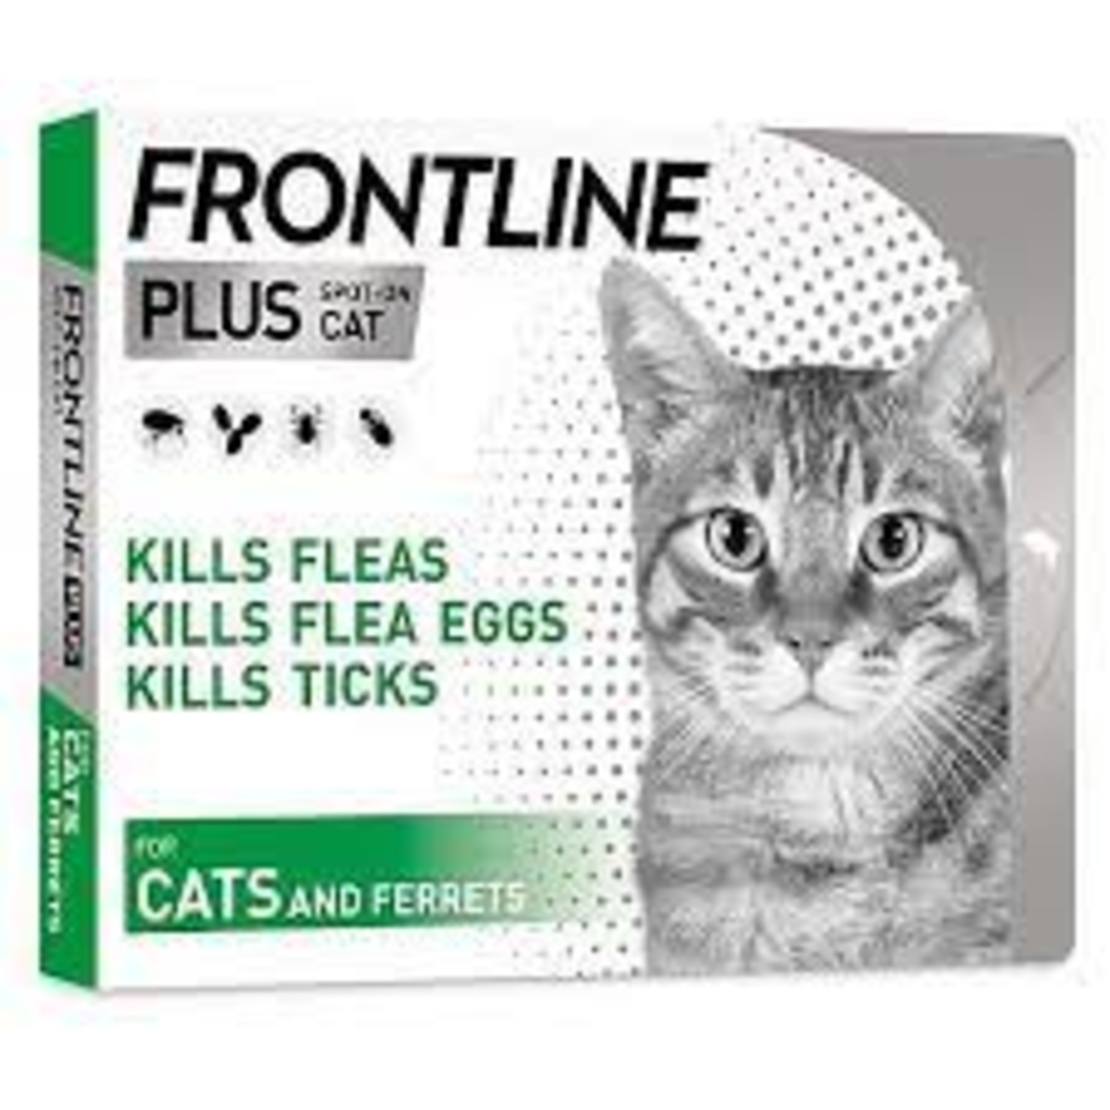 אמפולות פרונטליין פלוס לחתולים | frontline plus